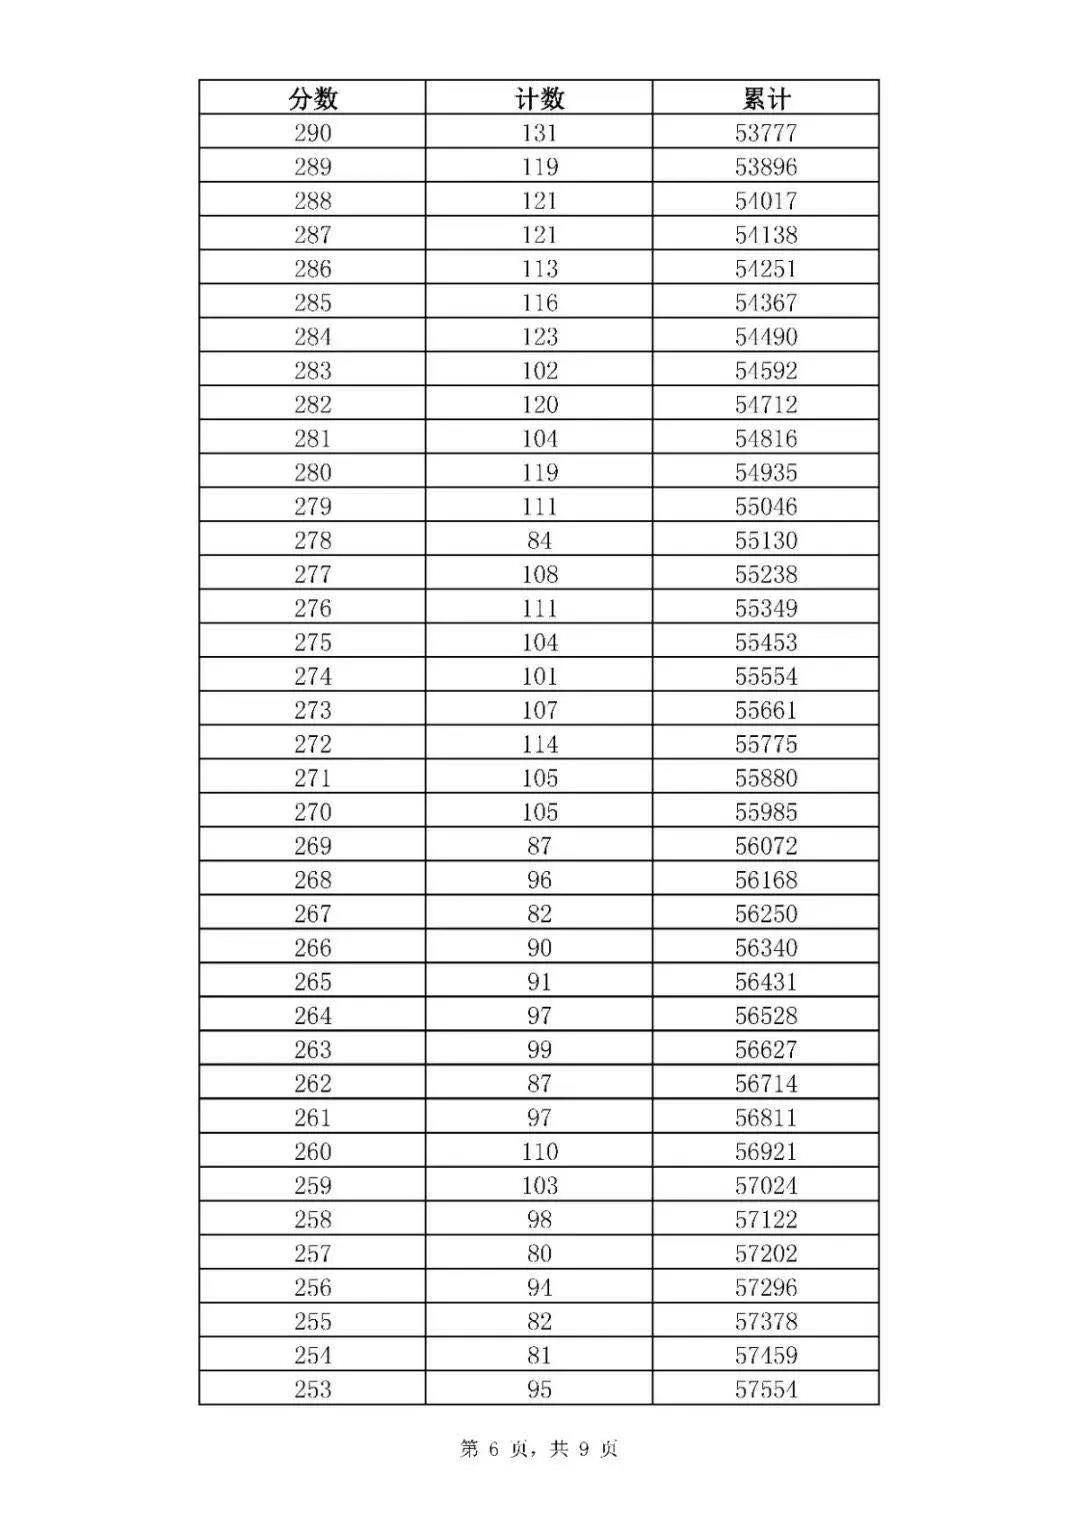 济南中考一分一段表来了，普通高中最低录取资格线369分